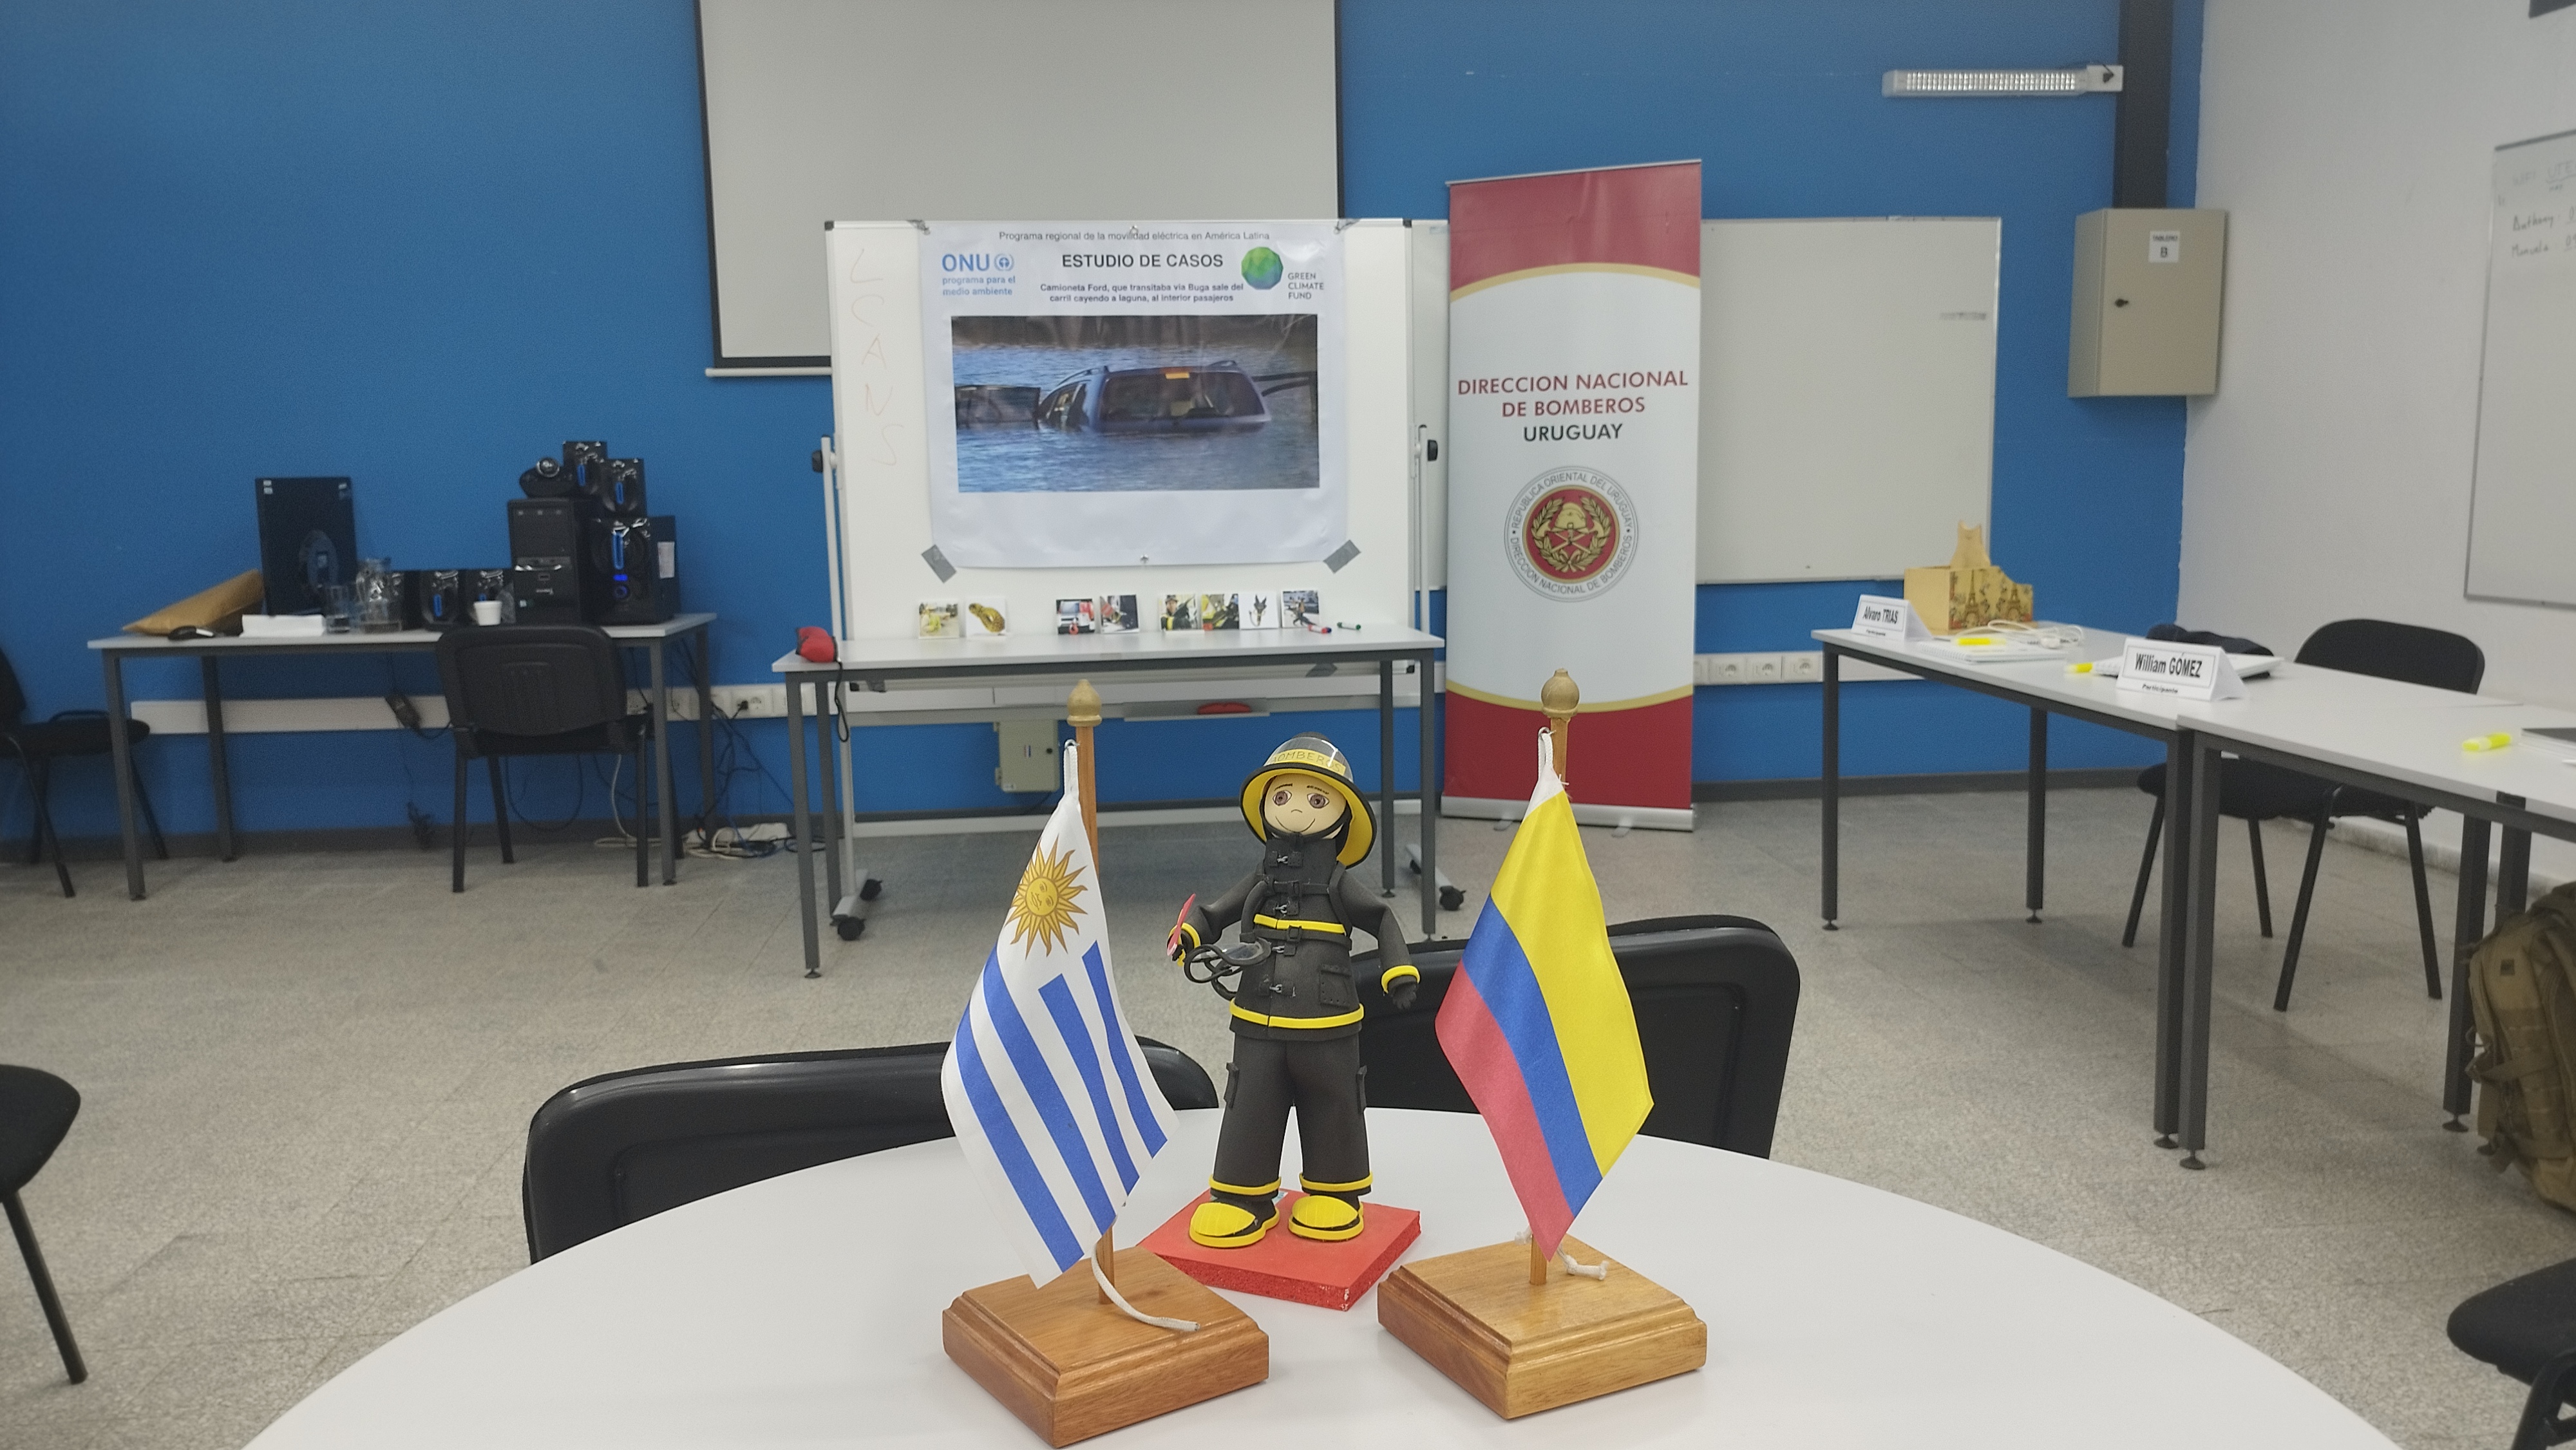 IMG_20230511_103322.jpg - El pasado jueves 11 de mayo culminó la &#034;Capacitación para bomberos sobre manejo de incidentes relacionados con la movilidad eléctrica&#034; en donde se capacitaron a 25 bomberos en la Base Aérea de Santa Bernardina del departamento de Durazno. Esta capacitación es la continuación del primer curso regional que organizó la plataforma MOVE del Programa de la Naciones Unidas para el Medio Ambiente a finales de 2022 en Paraguay, donde participaron y se formaron dos bomberos instructores de Uruguay.